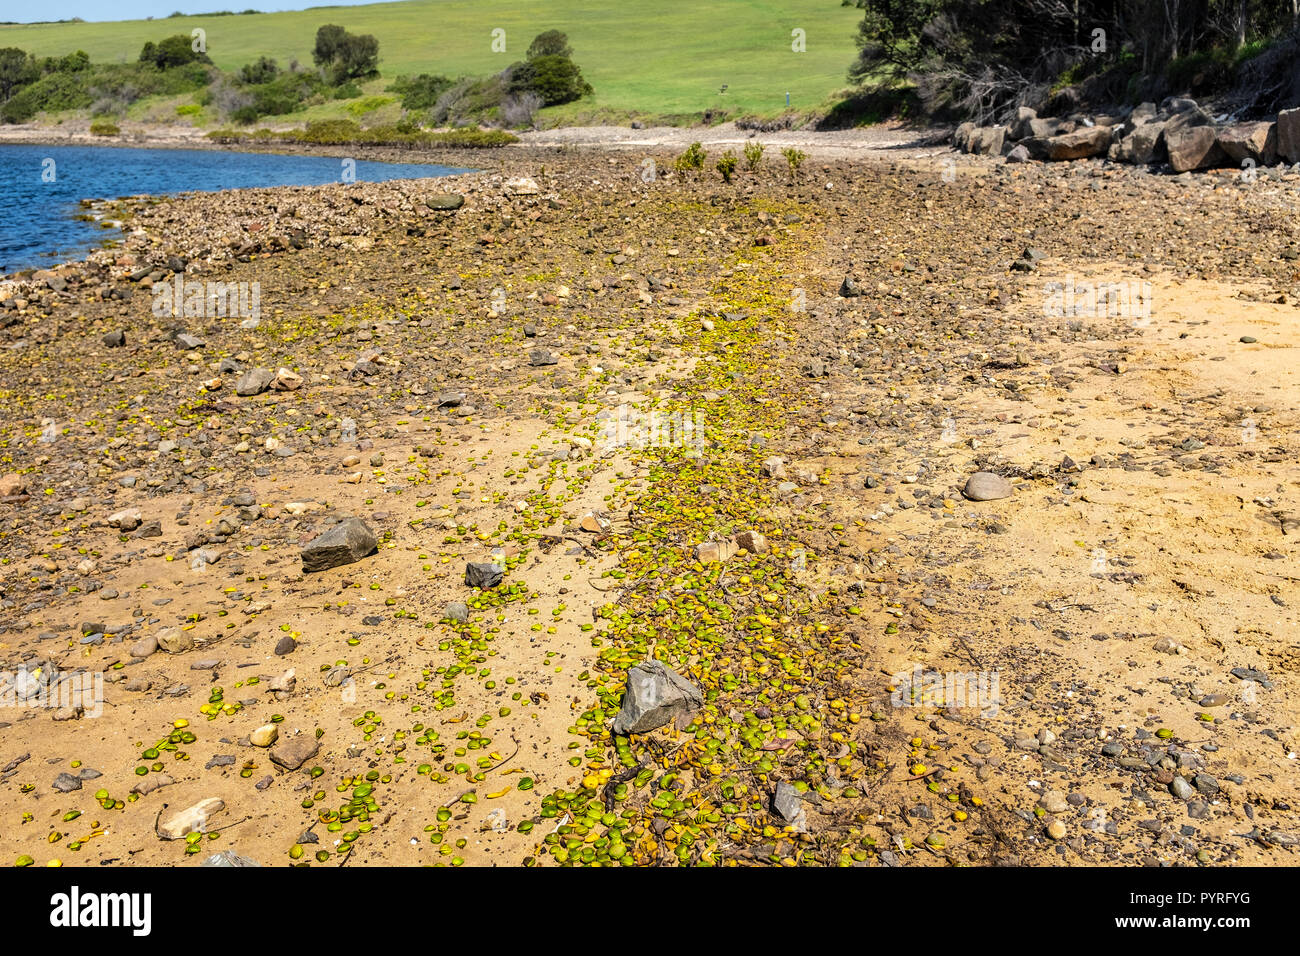 Australien Grey Mangrove (Avicennia marina) Baum Samen gewaschen am felsigen Strand sind Pionierpflanzen, besiedeln und tsunami Schutz geben Stockfoto